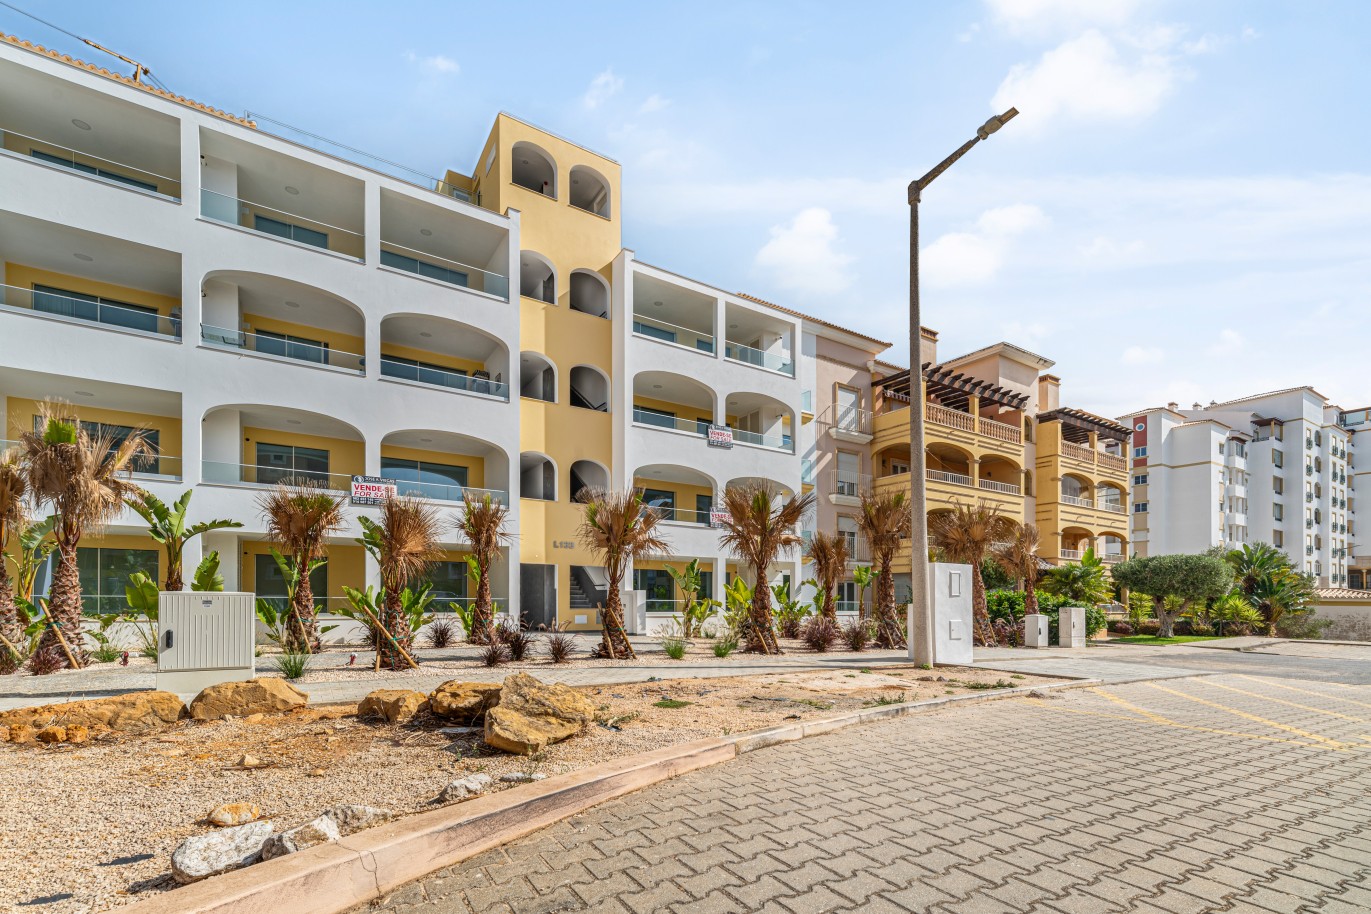 Verkauf einer Wohnung im Bau, mit Terrasse, Lagos, Algarve, Portugal_238109